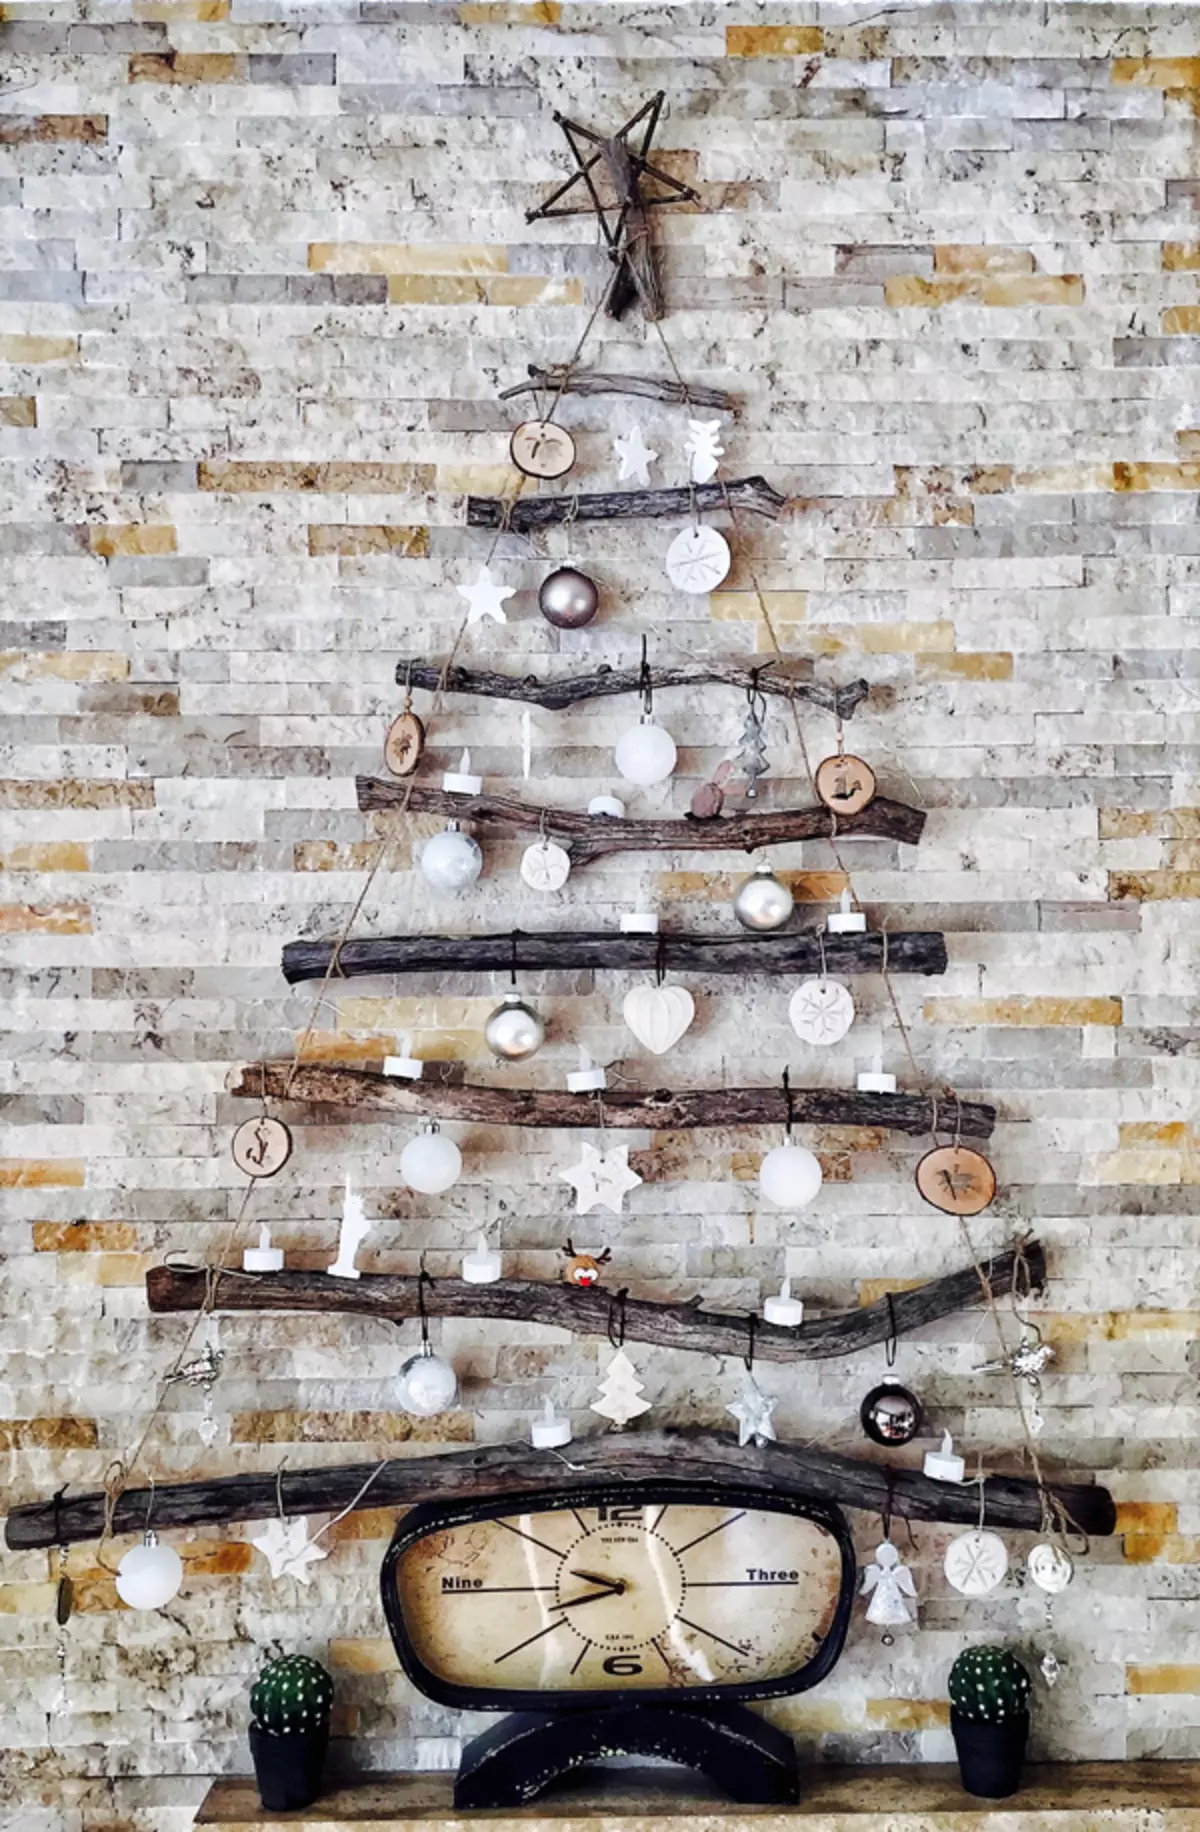 Geleneksel Noel ağacı orijinal iç aksanıyla değiştirilebilir